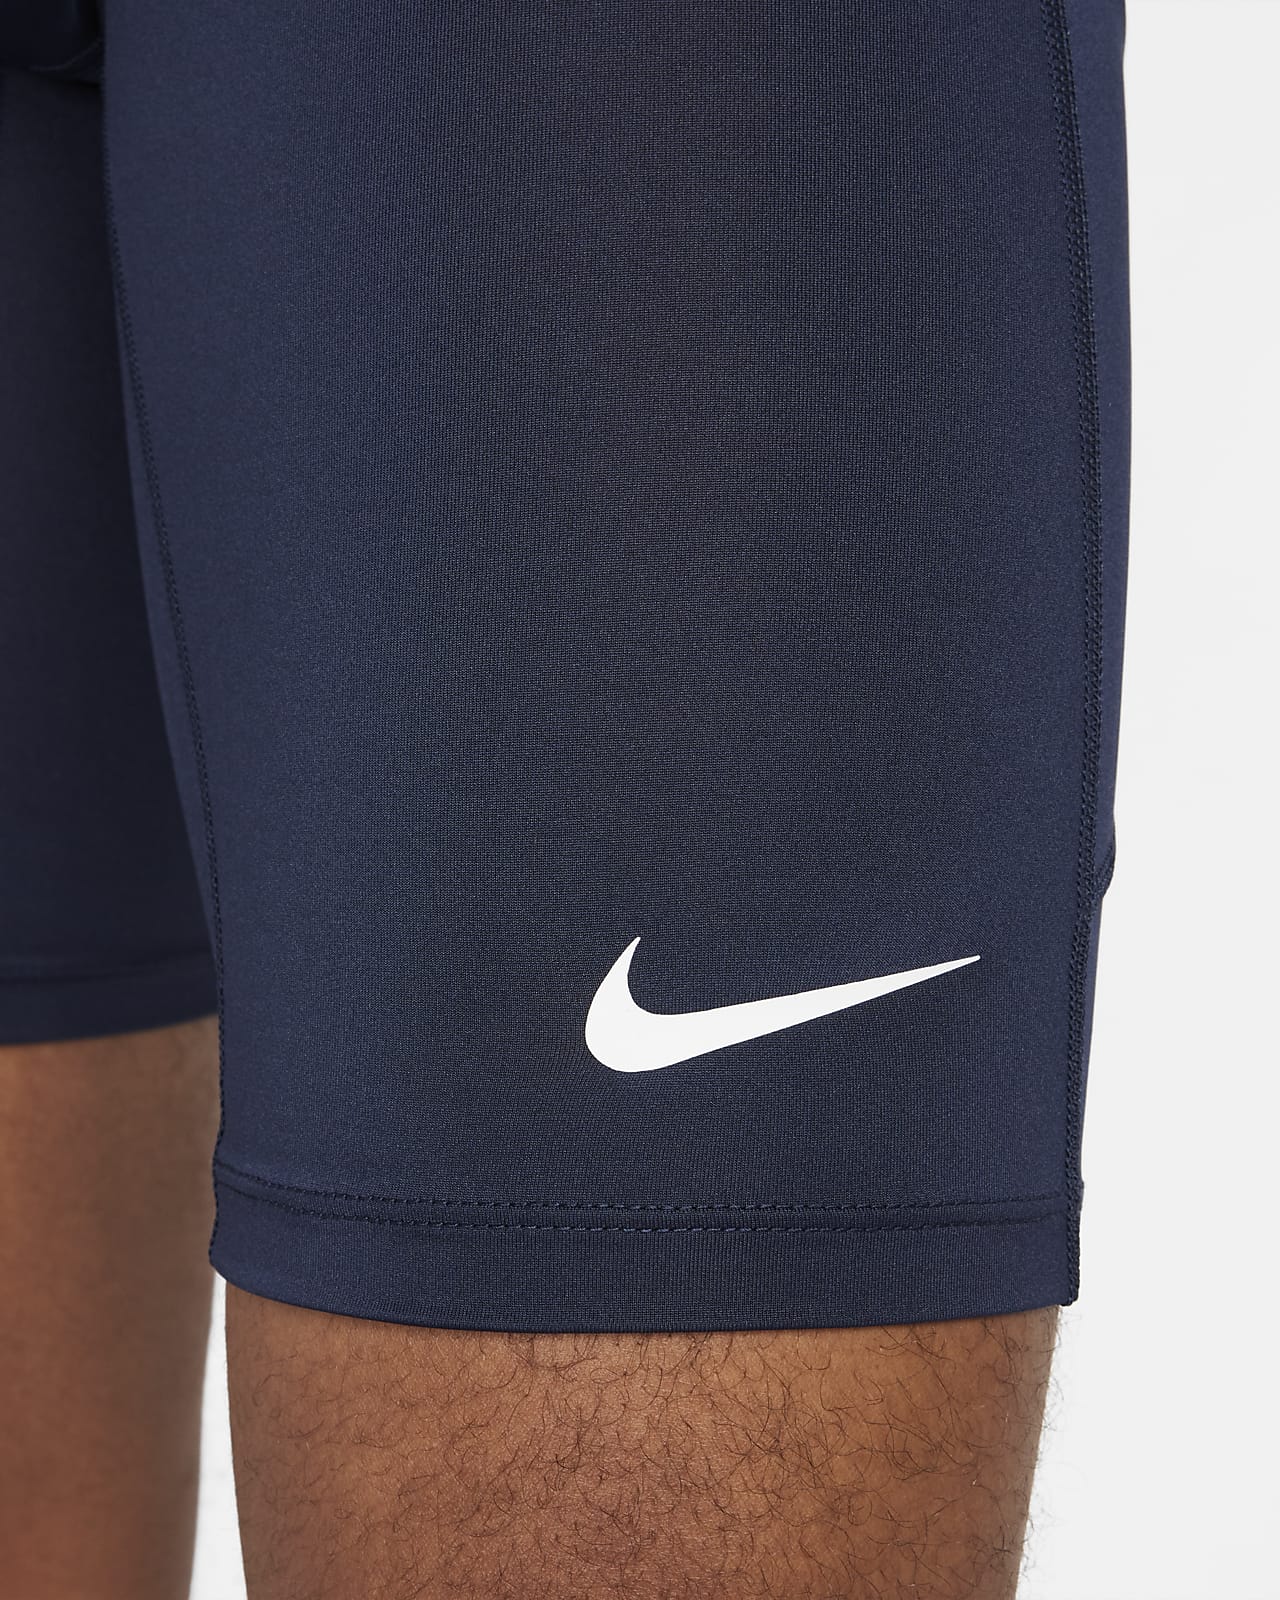 Nike Half Tight Running Shorts